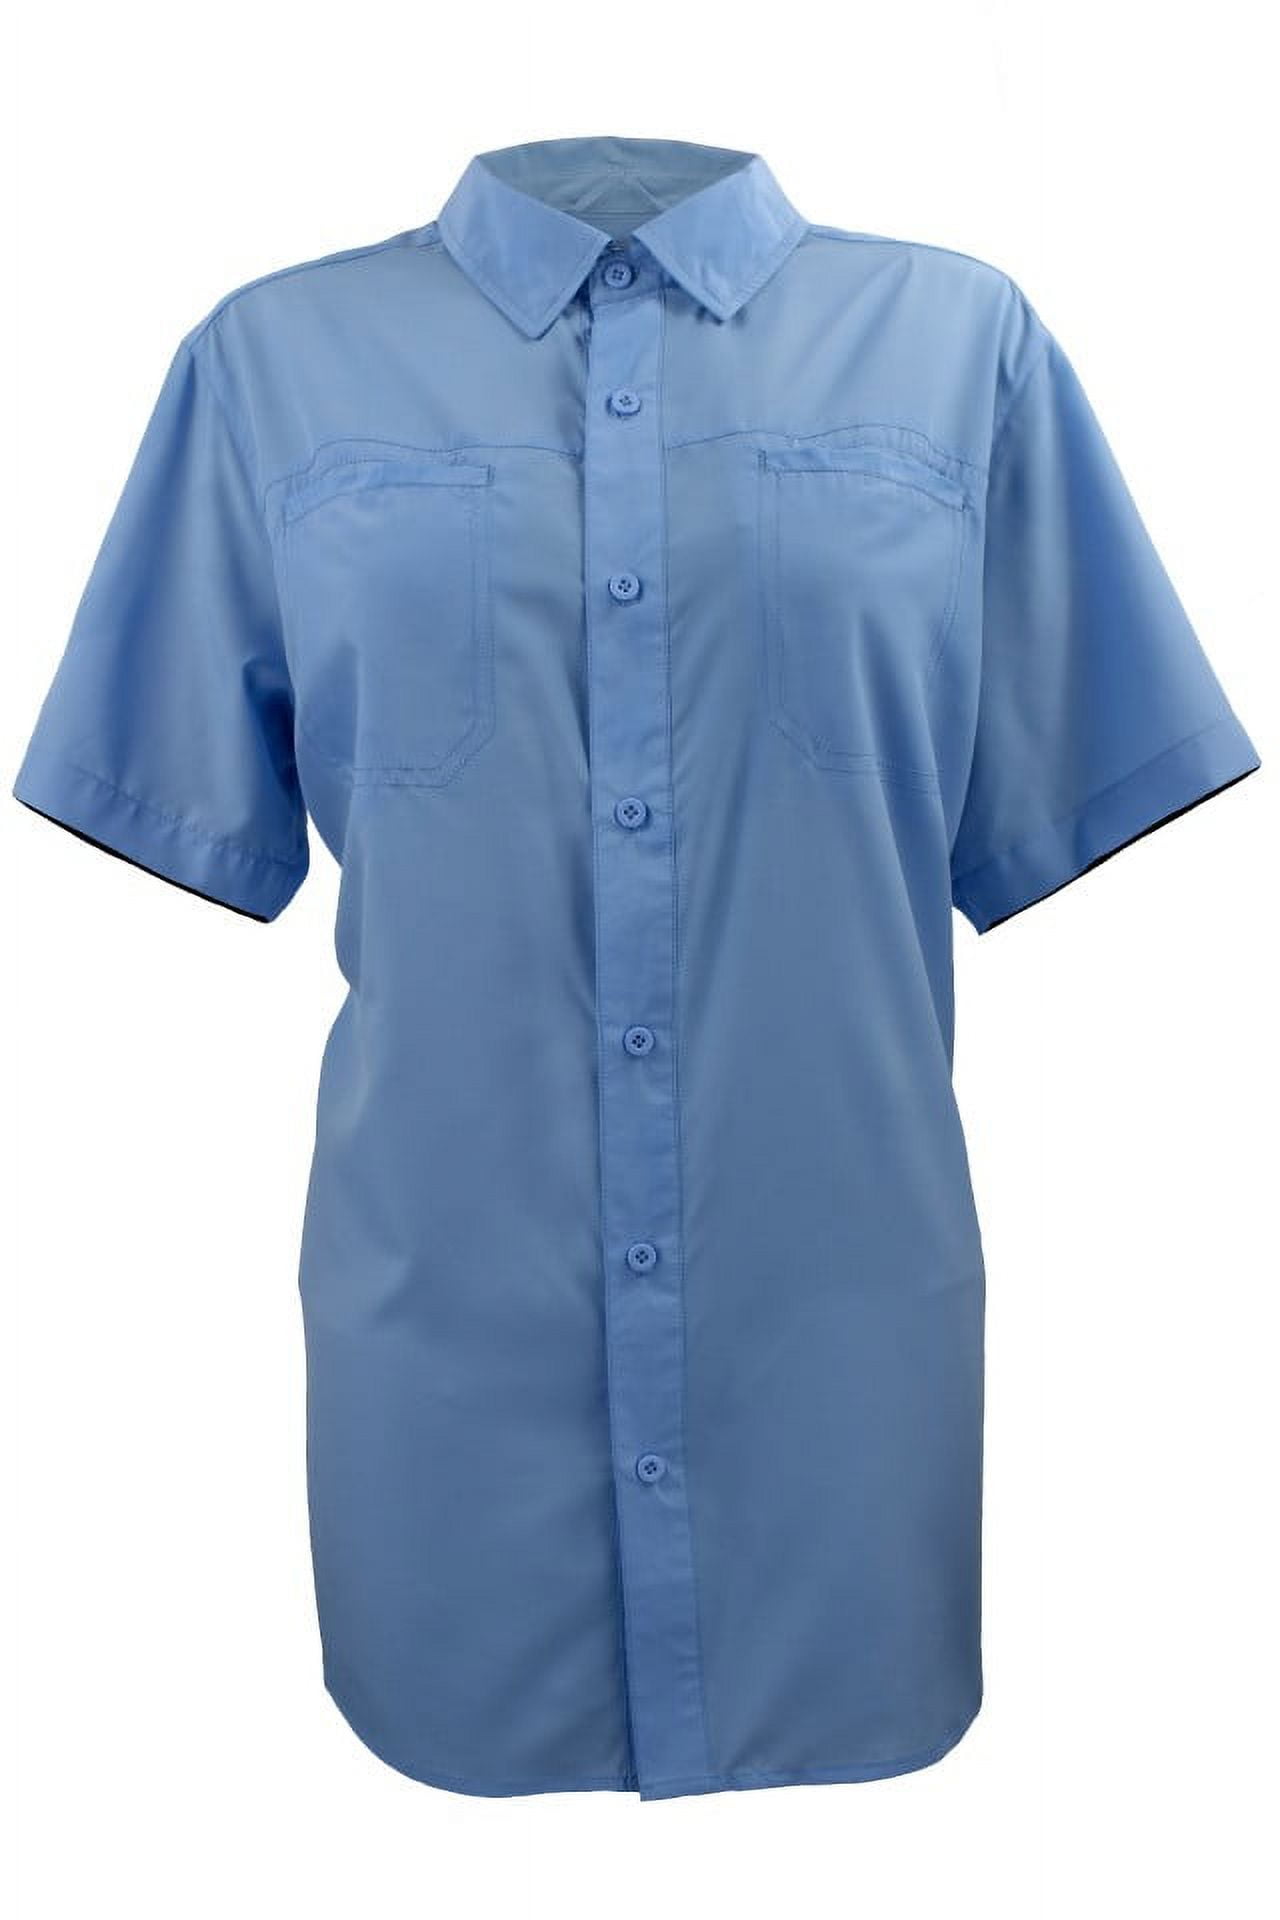 Fintech Women's Short Sleeve Fishing Shirt - Medium, Blue